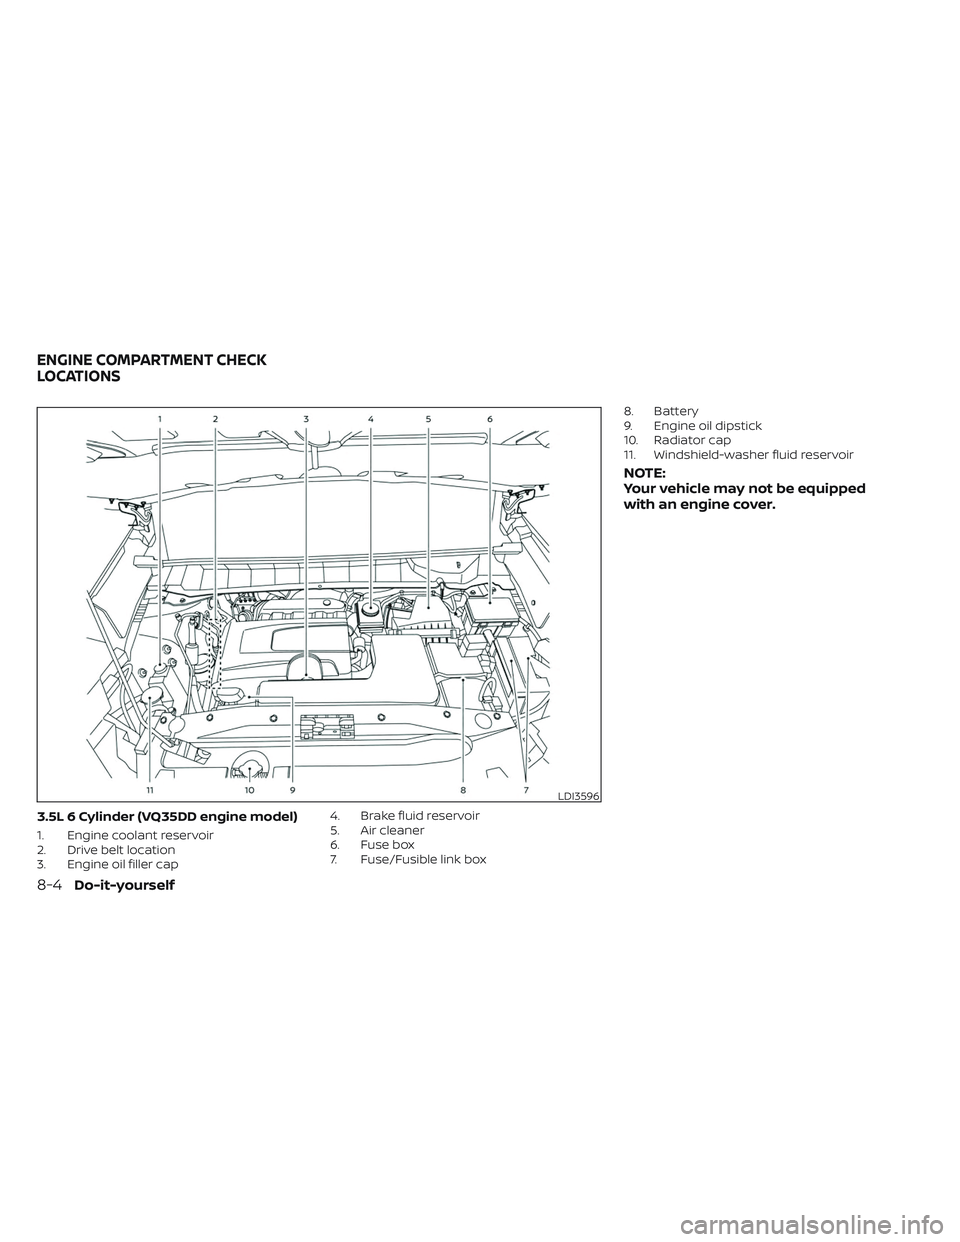 NISSAN PATHFINDER 2022  Owner´s Manual 3.5L 6 Cylinder (VQ35DD engine model)
1. Engine coolant reservoir
2. Drive belt location
3. Engine oil filler cap4. Brake fluid reservoir
5. Air cleaner
6. Fuse box
7. Fuse/Fusible link box8. Battery
